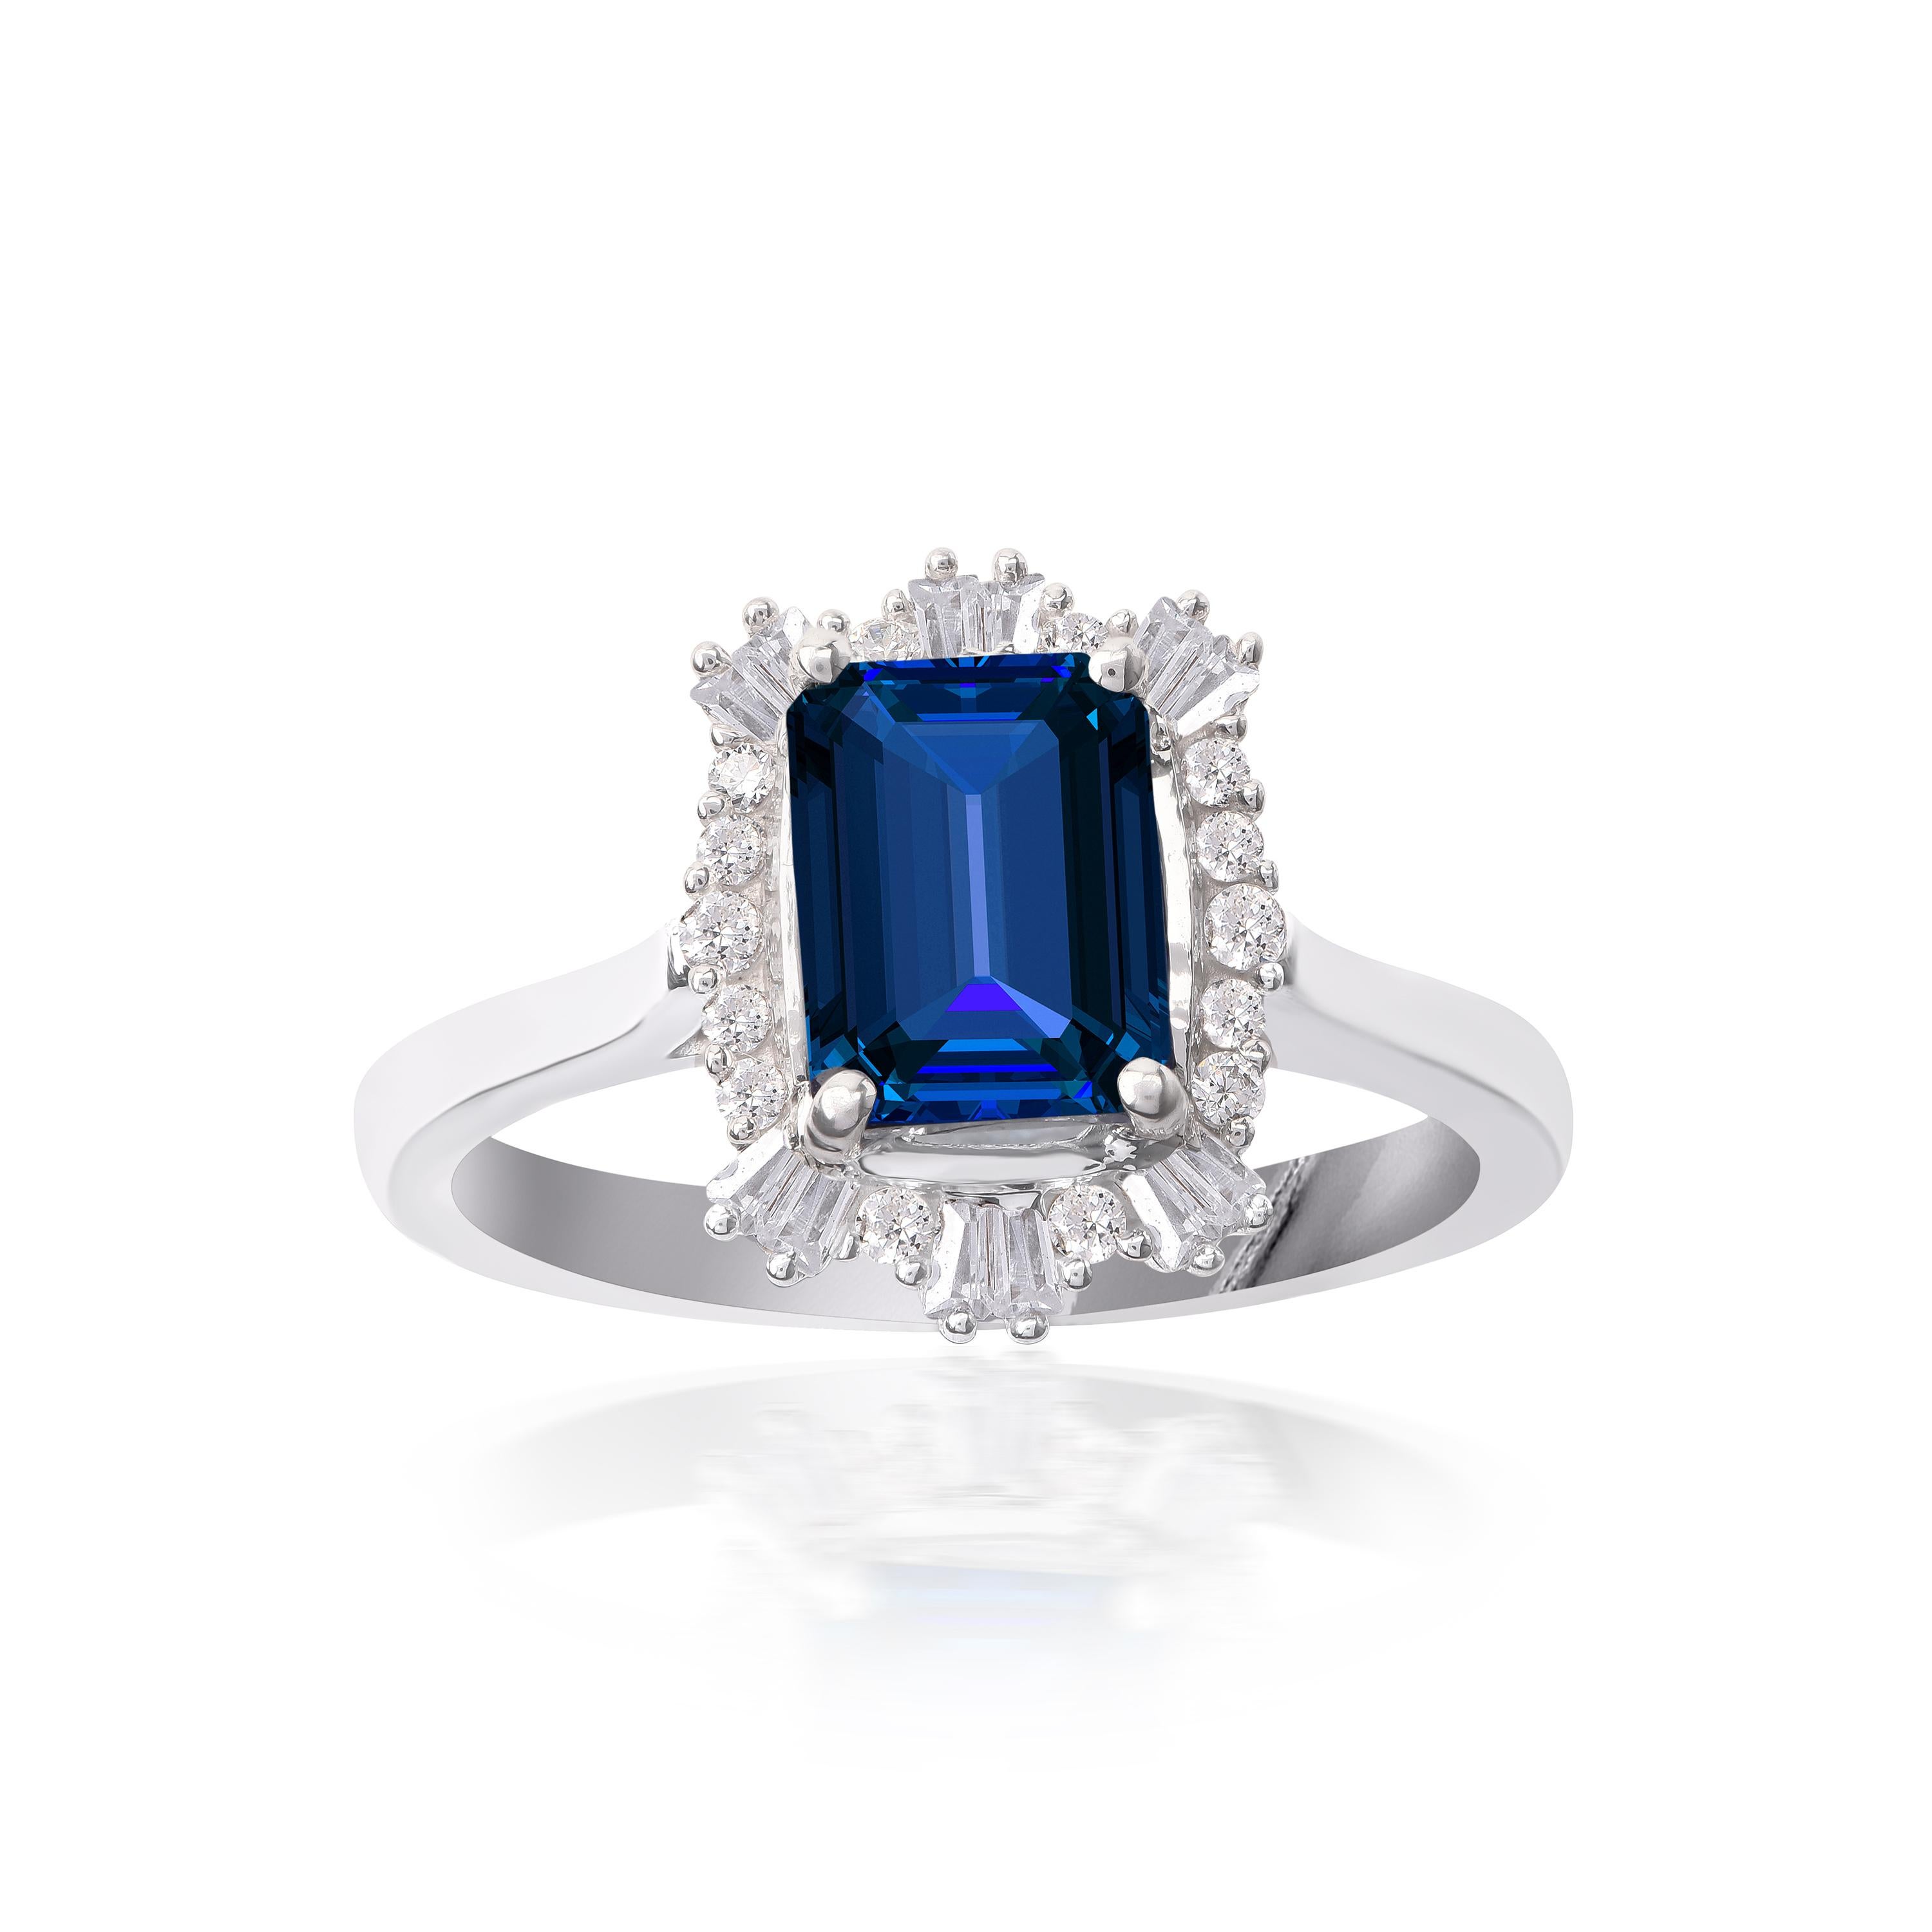 Dieser atemberaubende Ring wurde von unseren Experten aus 18 Karat Weißgold gefertigt und mit 14 Diamanten im Brillant- und 12 Diamanten im Baguetteschliff sowie 1 blauem Saphir in Zacken- und Lünettenfassung verziert. Die Diamanten sind mit der